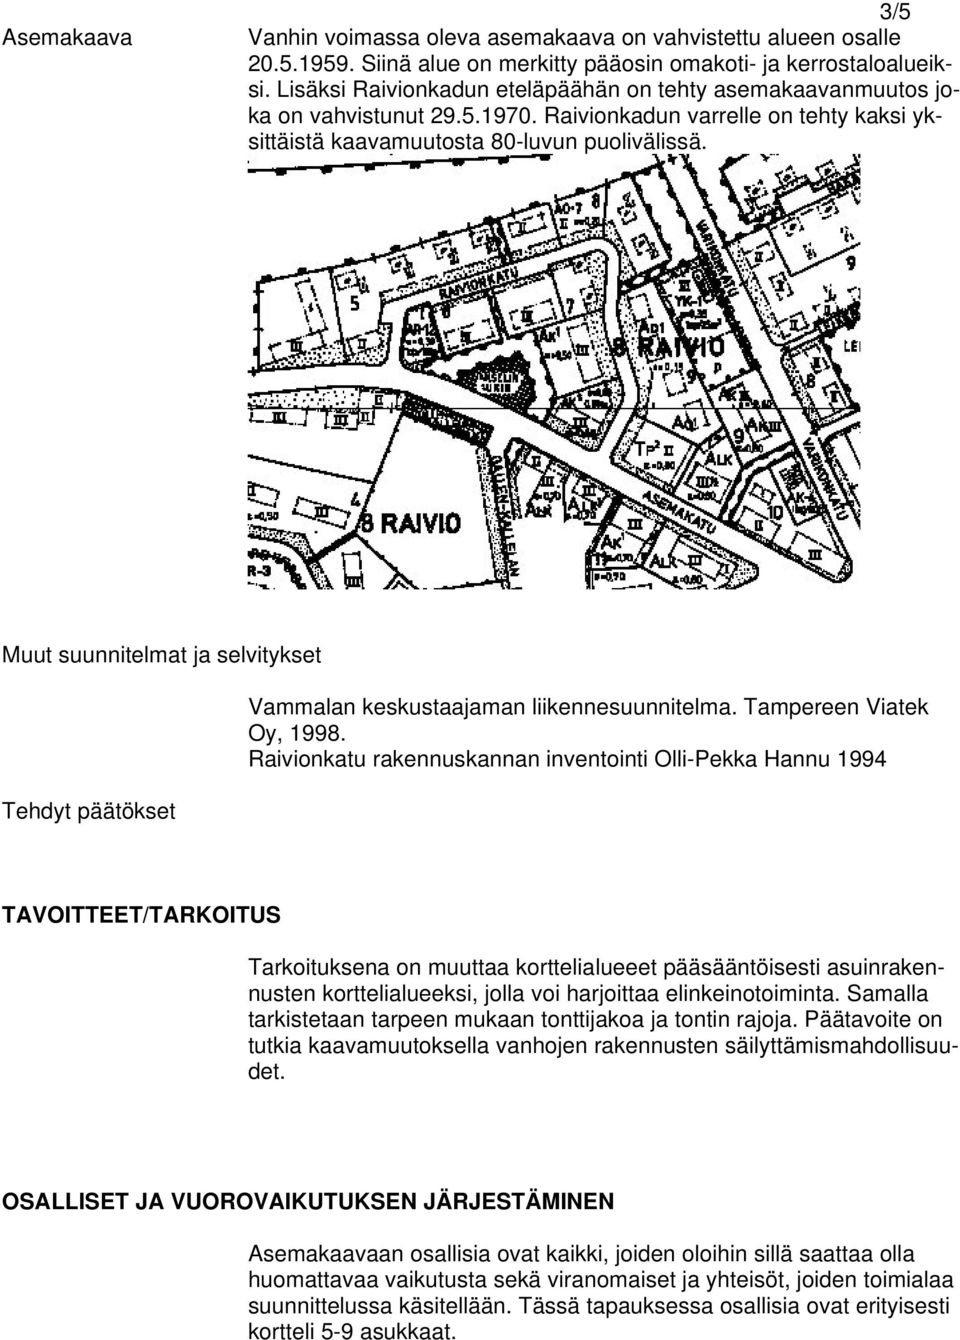 Muut suunnitelmat ja selvitykset Tehdyt päätökset Vammalan keskustaajaman liikennesuunnitelma. Tampereen Viatek Oy, 1998.